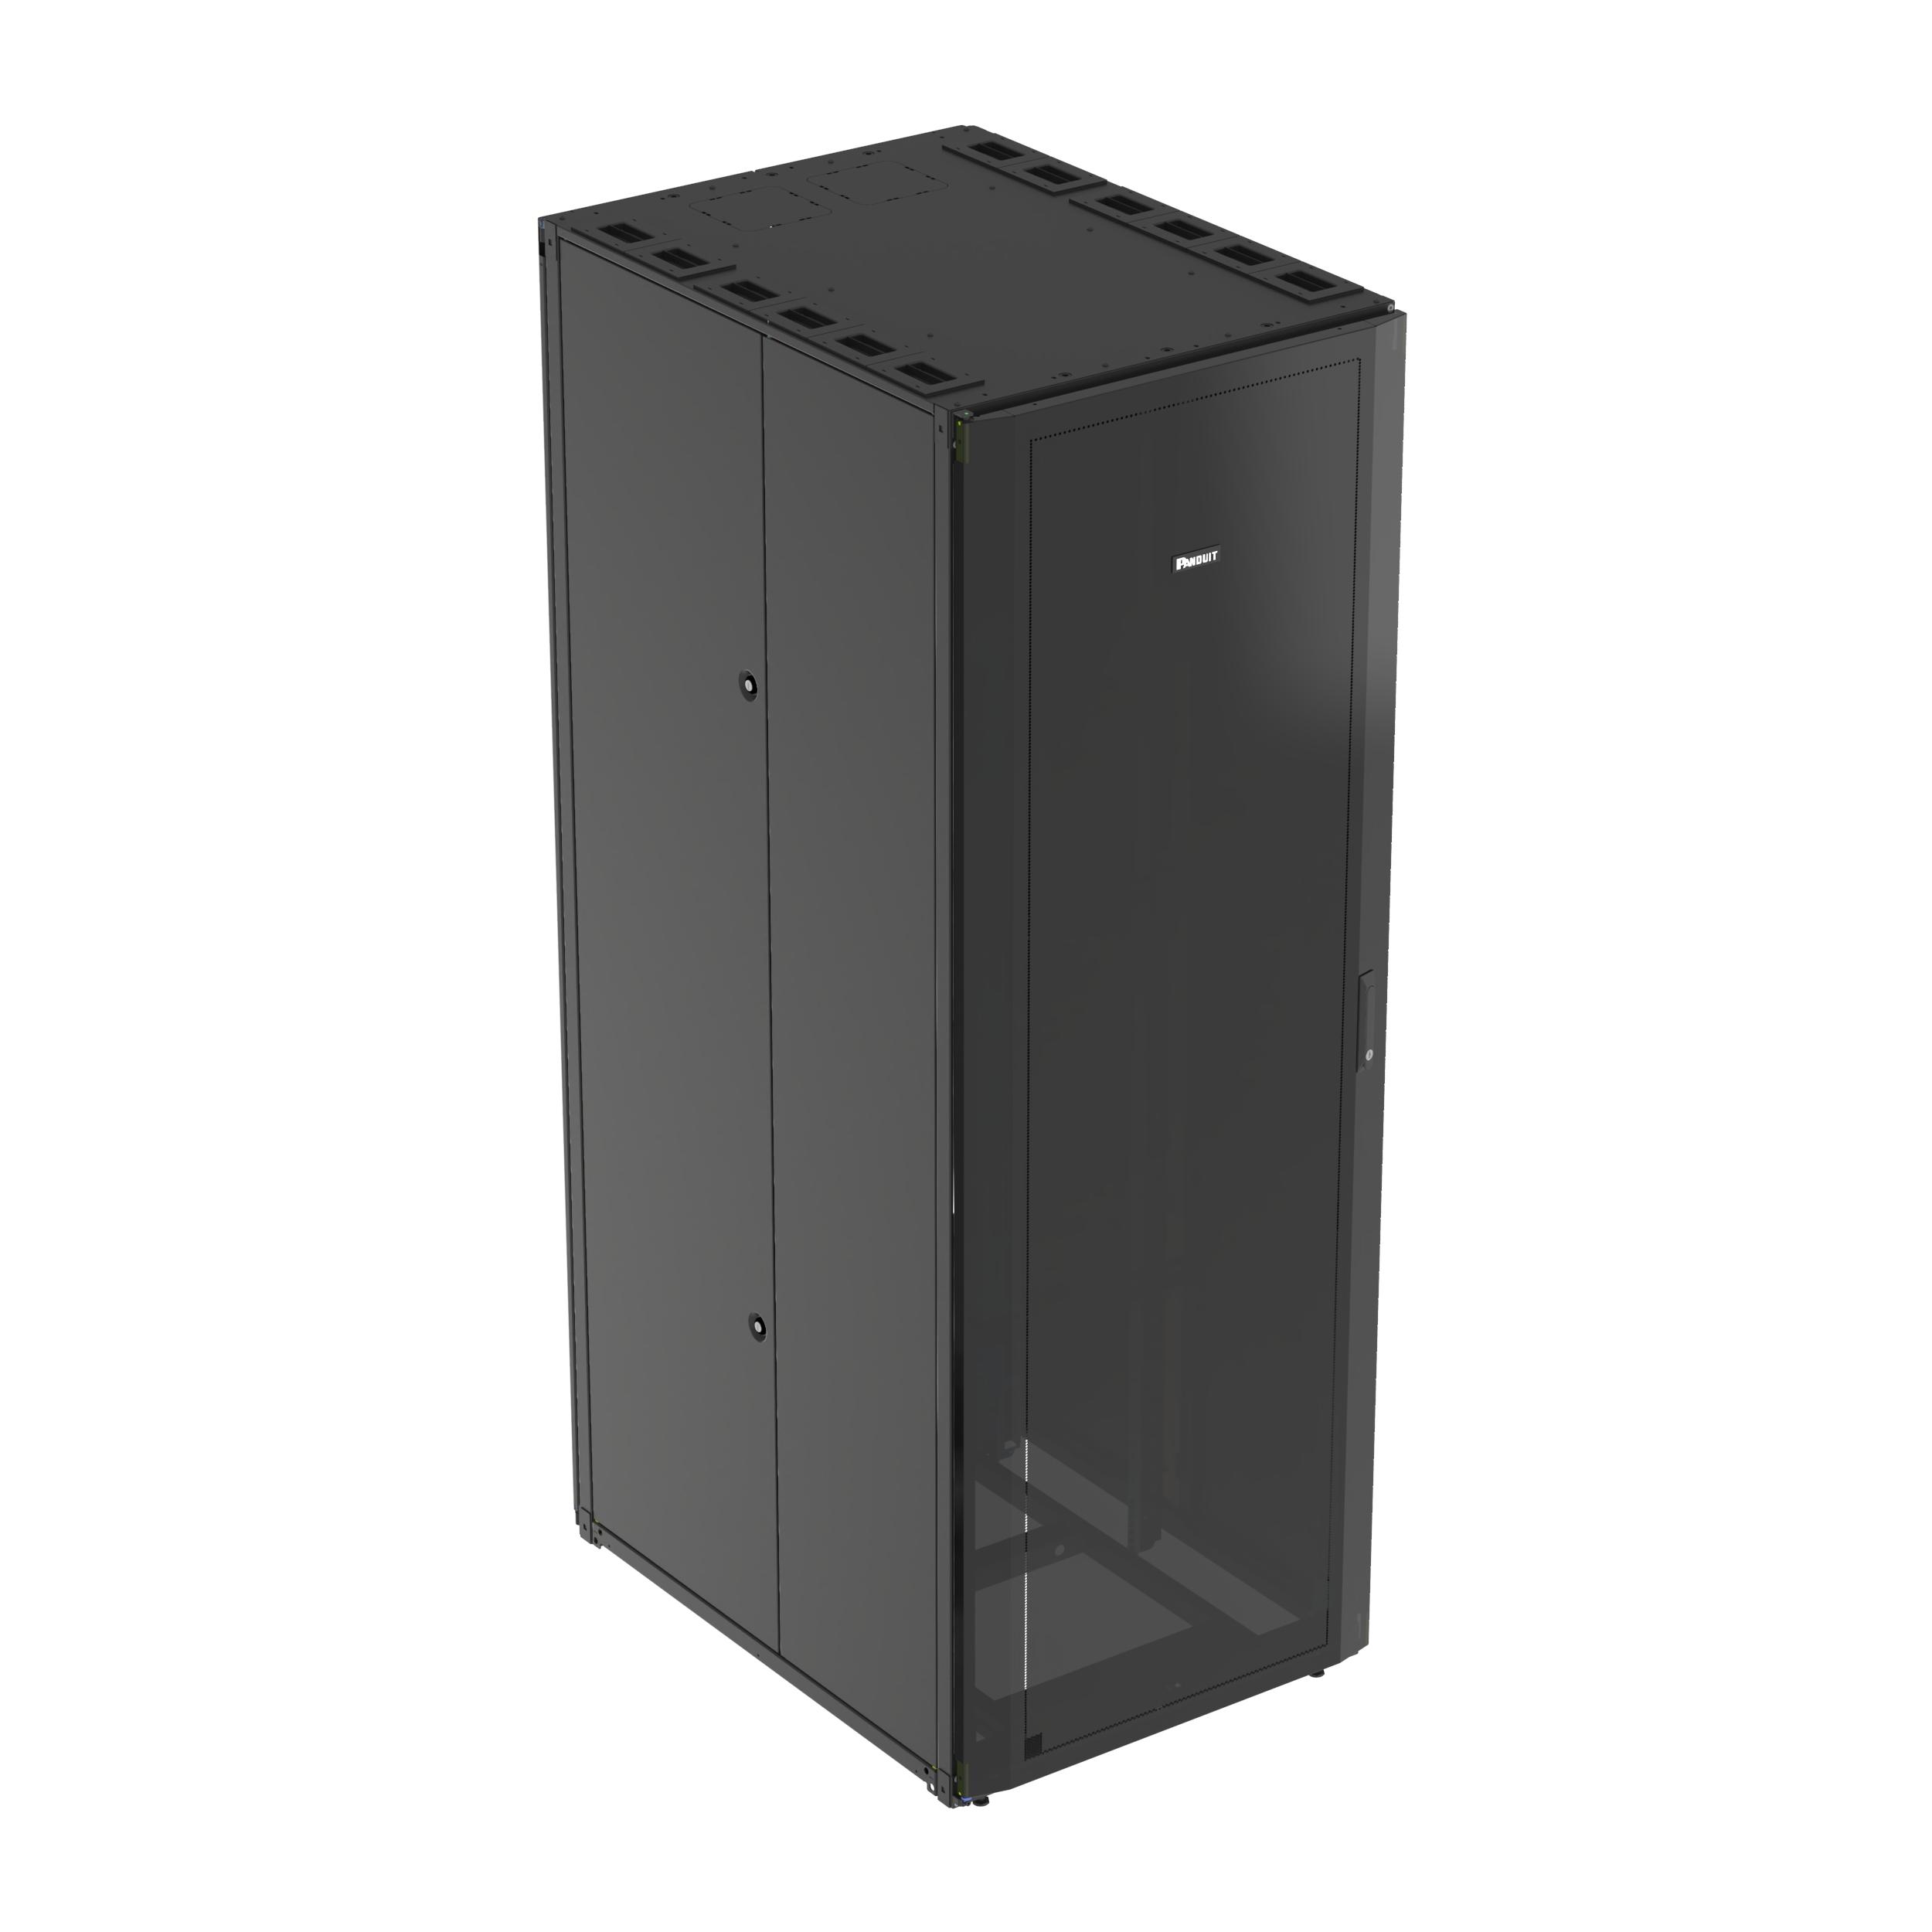 Panduit S7222BU Net-Access™ S-Type Cabinet